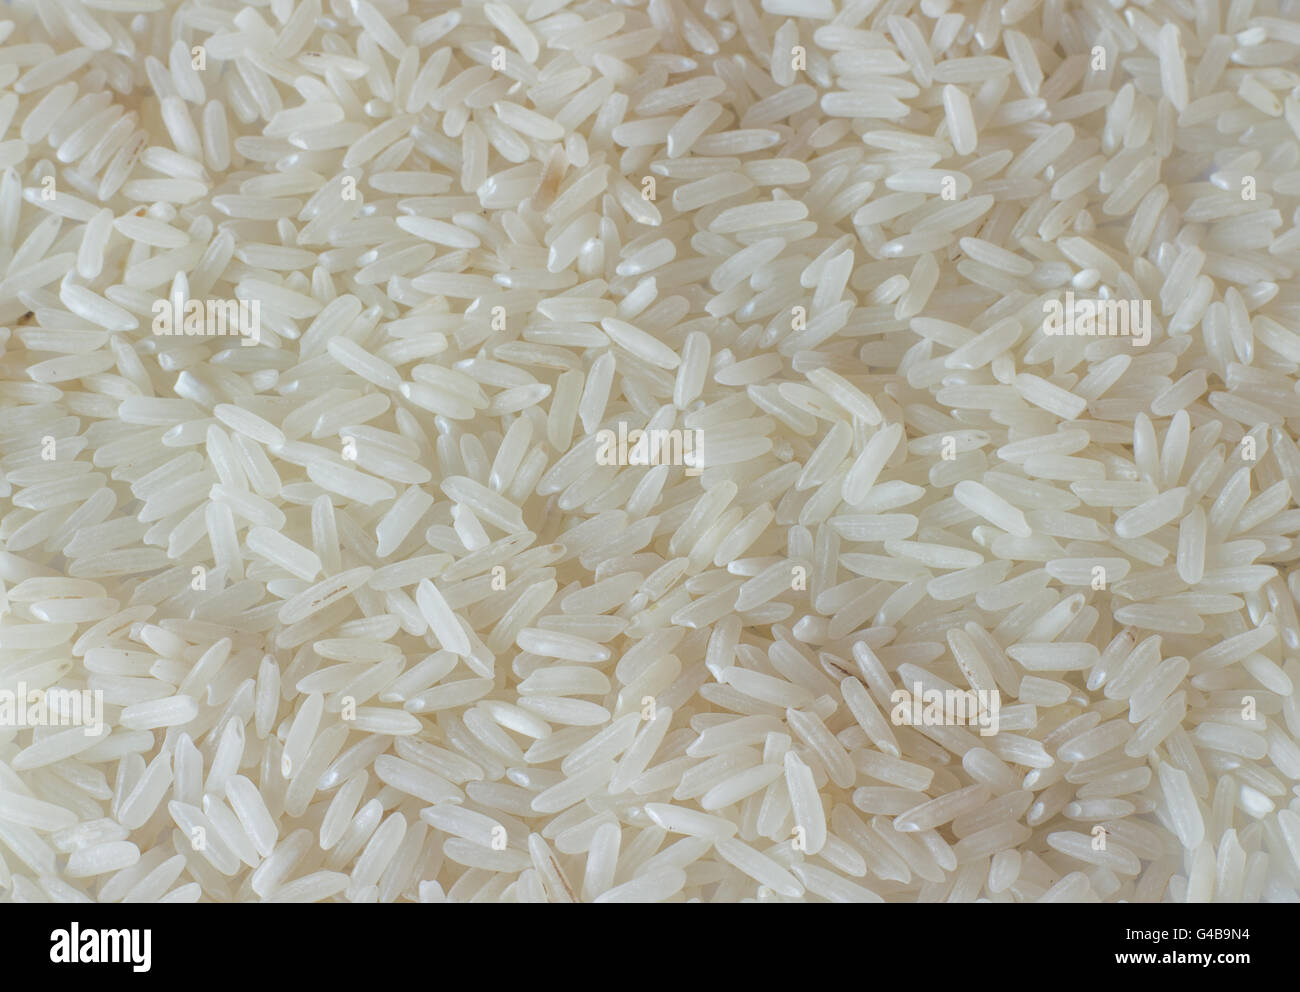 Weiße lange Reis Hintergrund, ungekocht rohes Getreide, roher Reiskorn Stockfoto